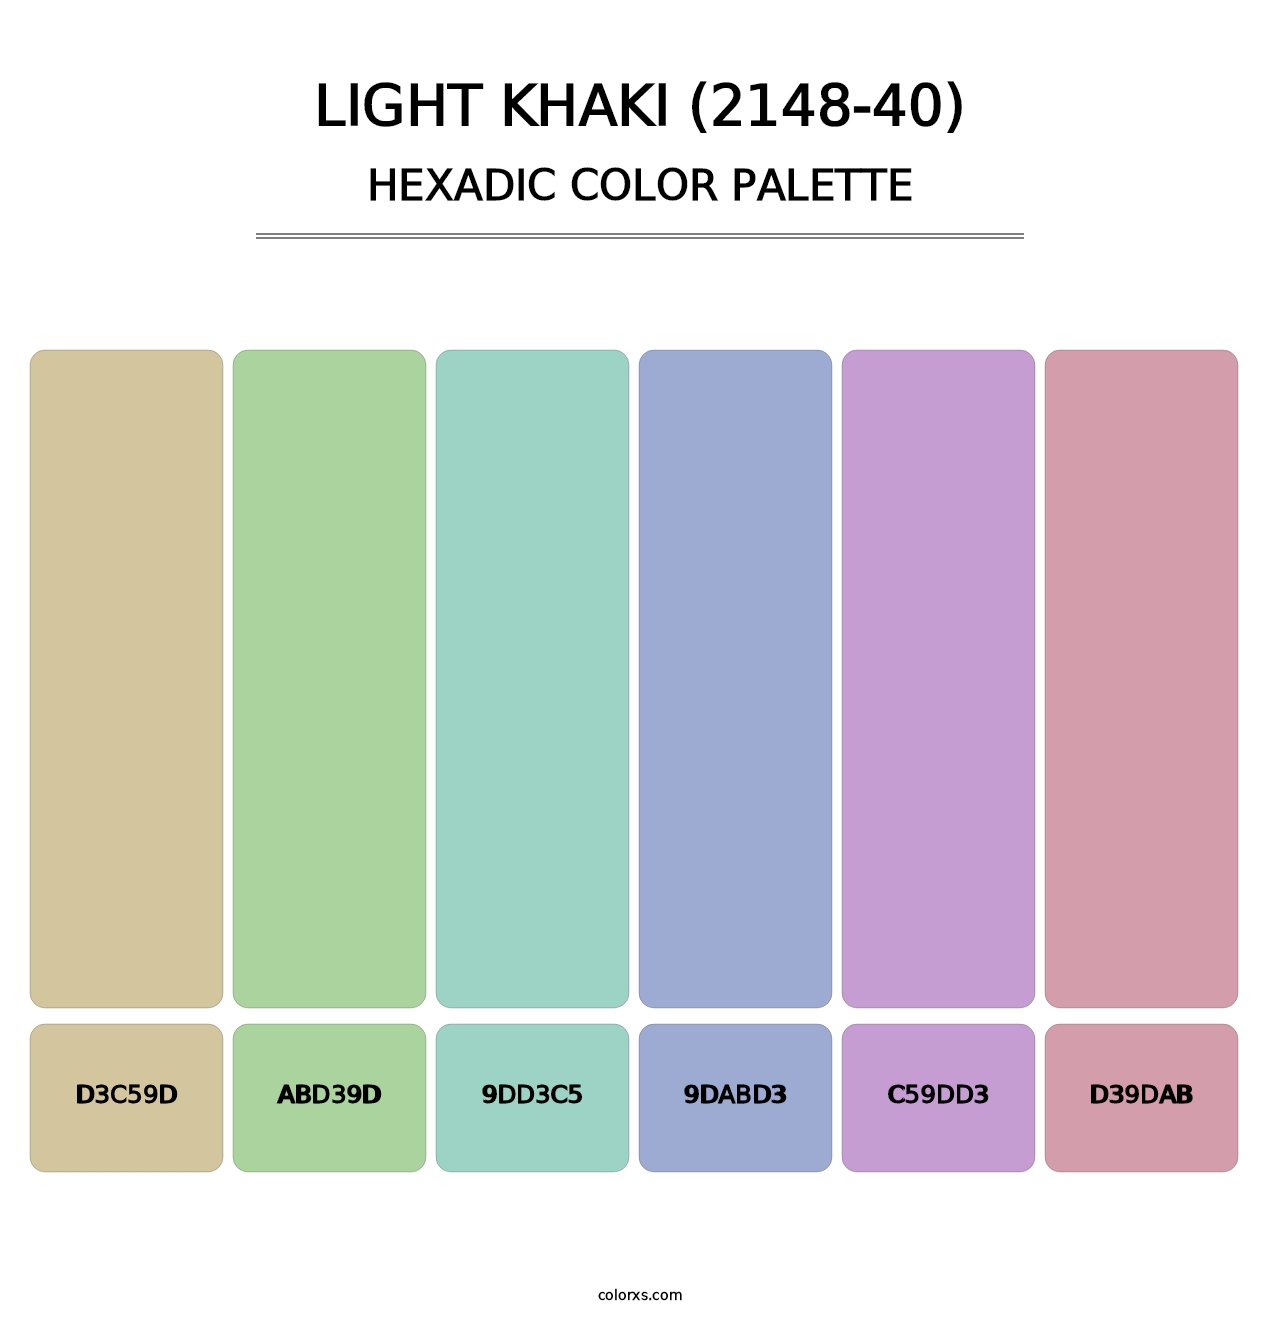 Light Khaki (2148-40) - Hexadic Color Palette